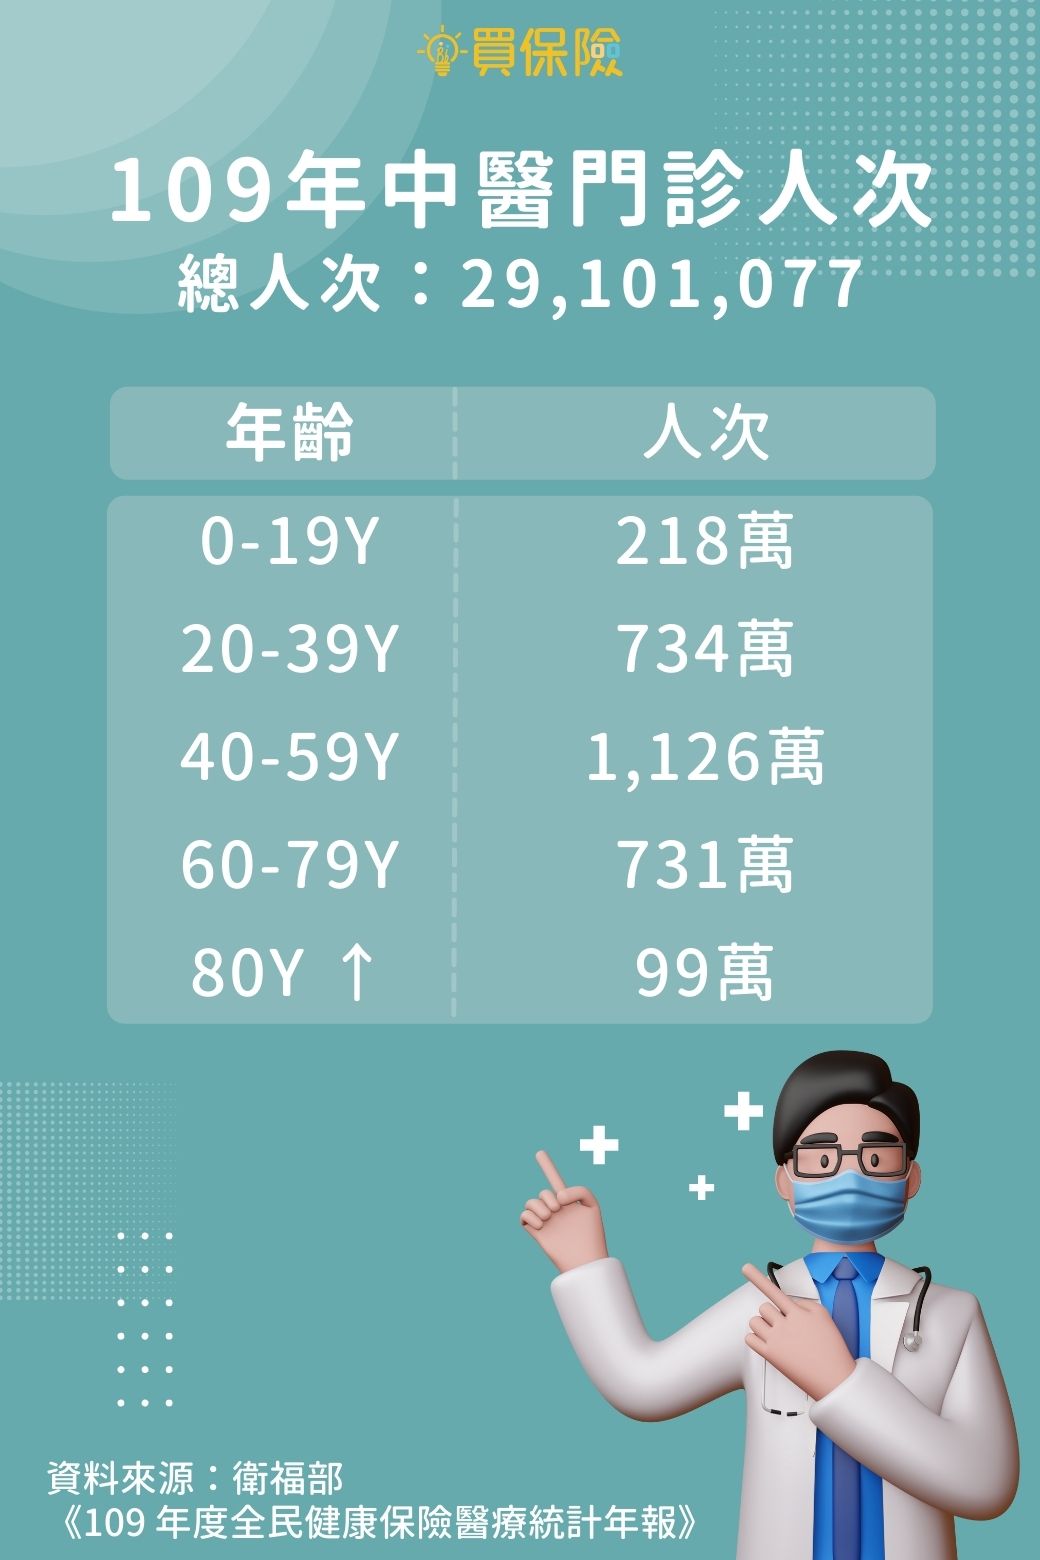 衛福部公布，109年度共有2,910萬人次至中醫門診治療，台灣人超愛看中醫!